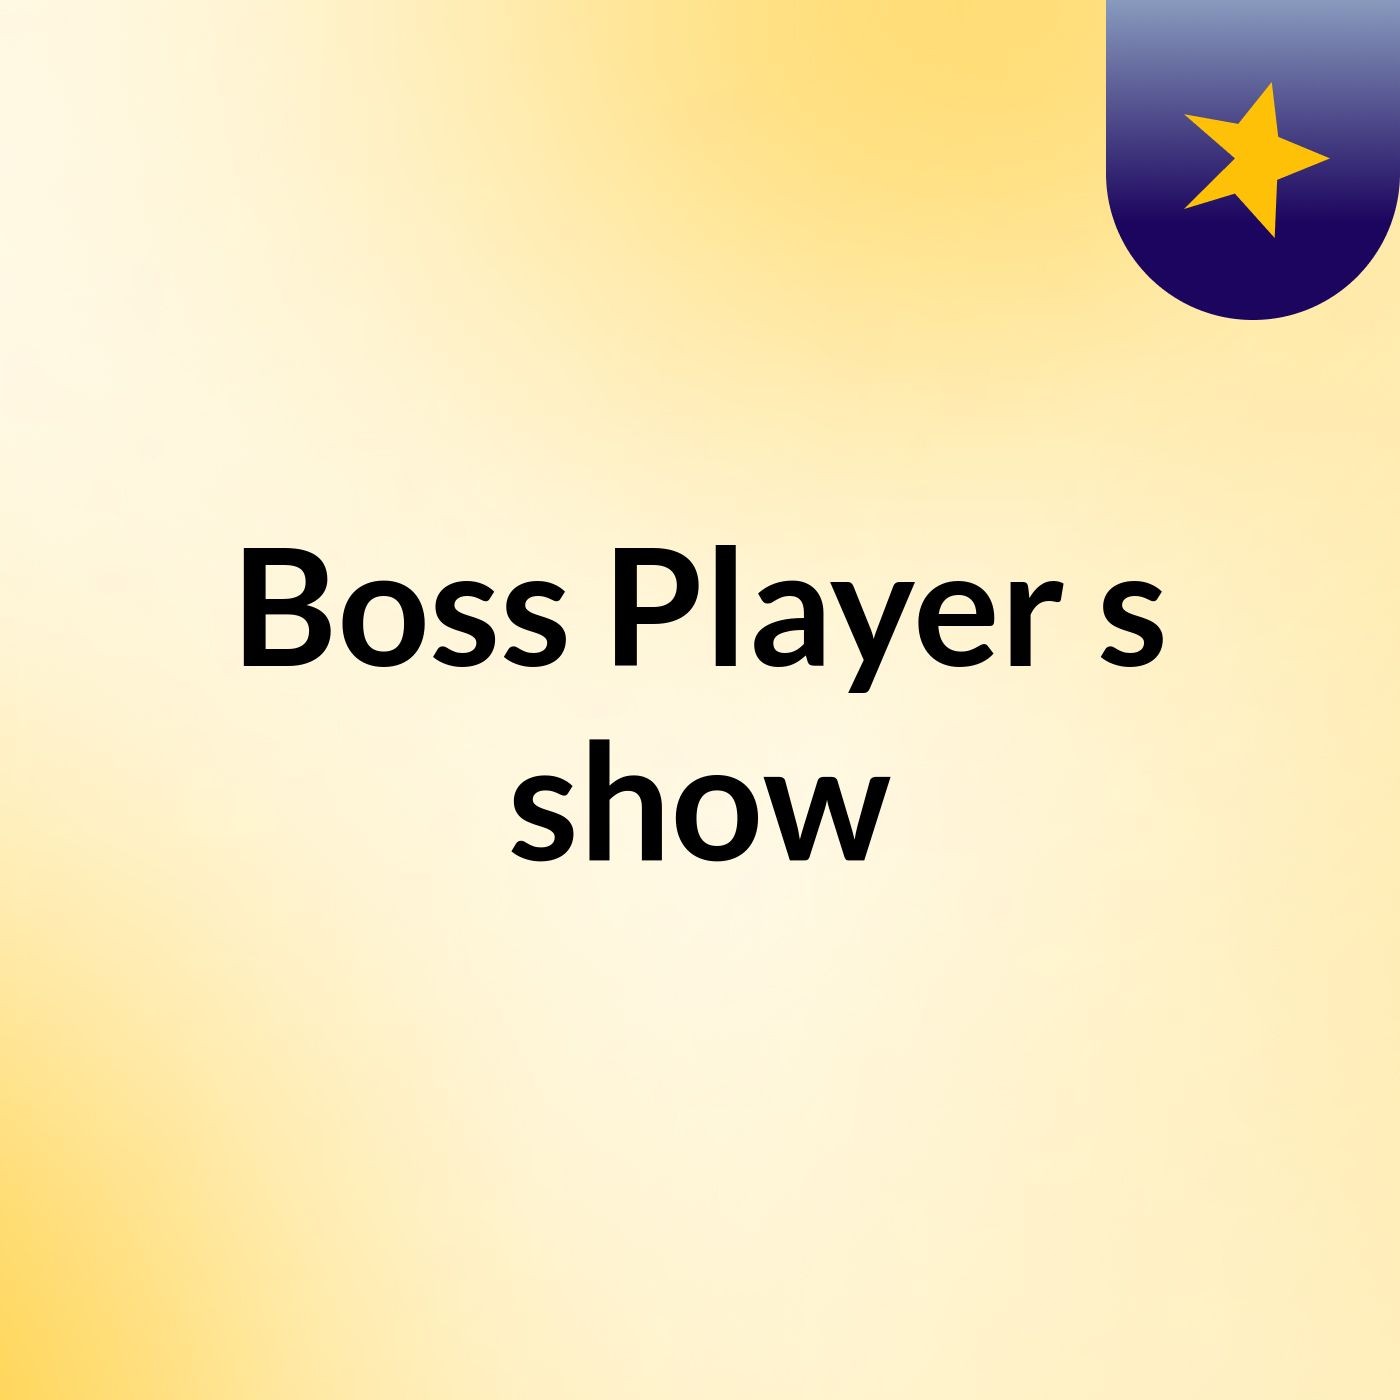 Boss Player's show